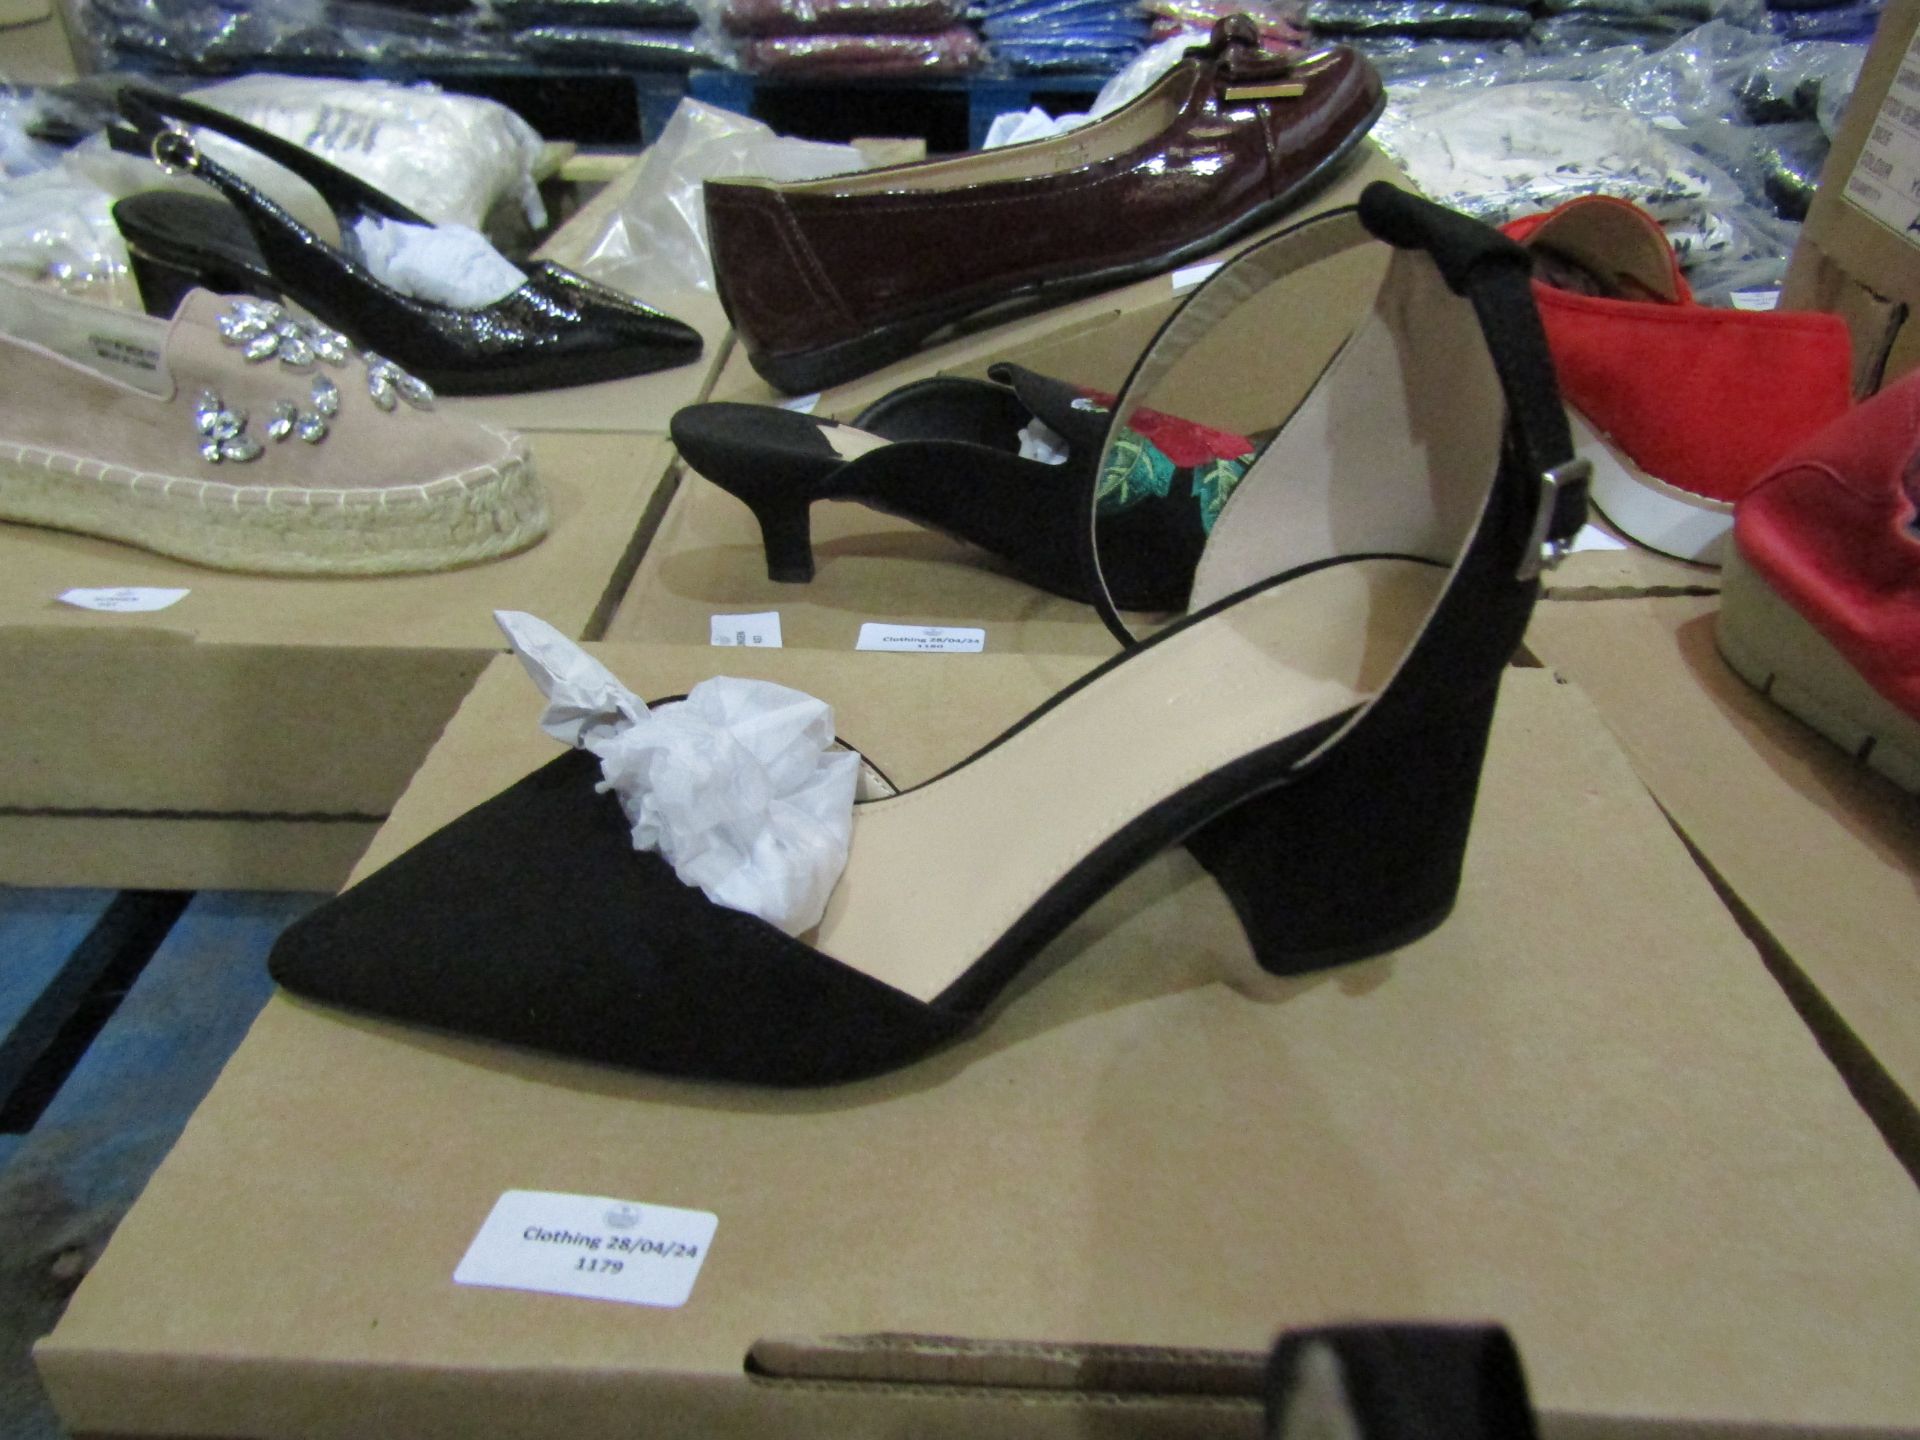 Ladies Black Heel Shoes, Uk 5EX2 Wide, Unworn & Boxed.